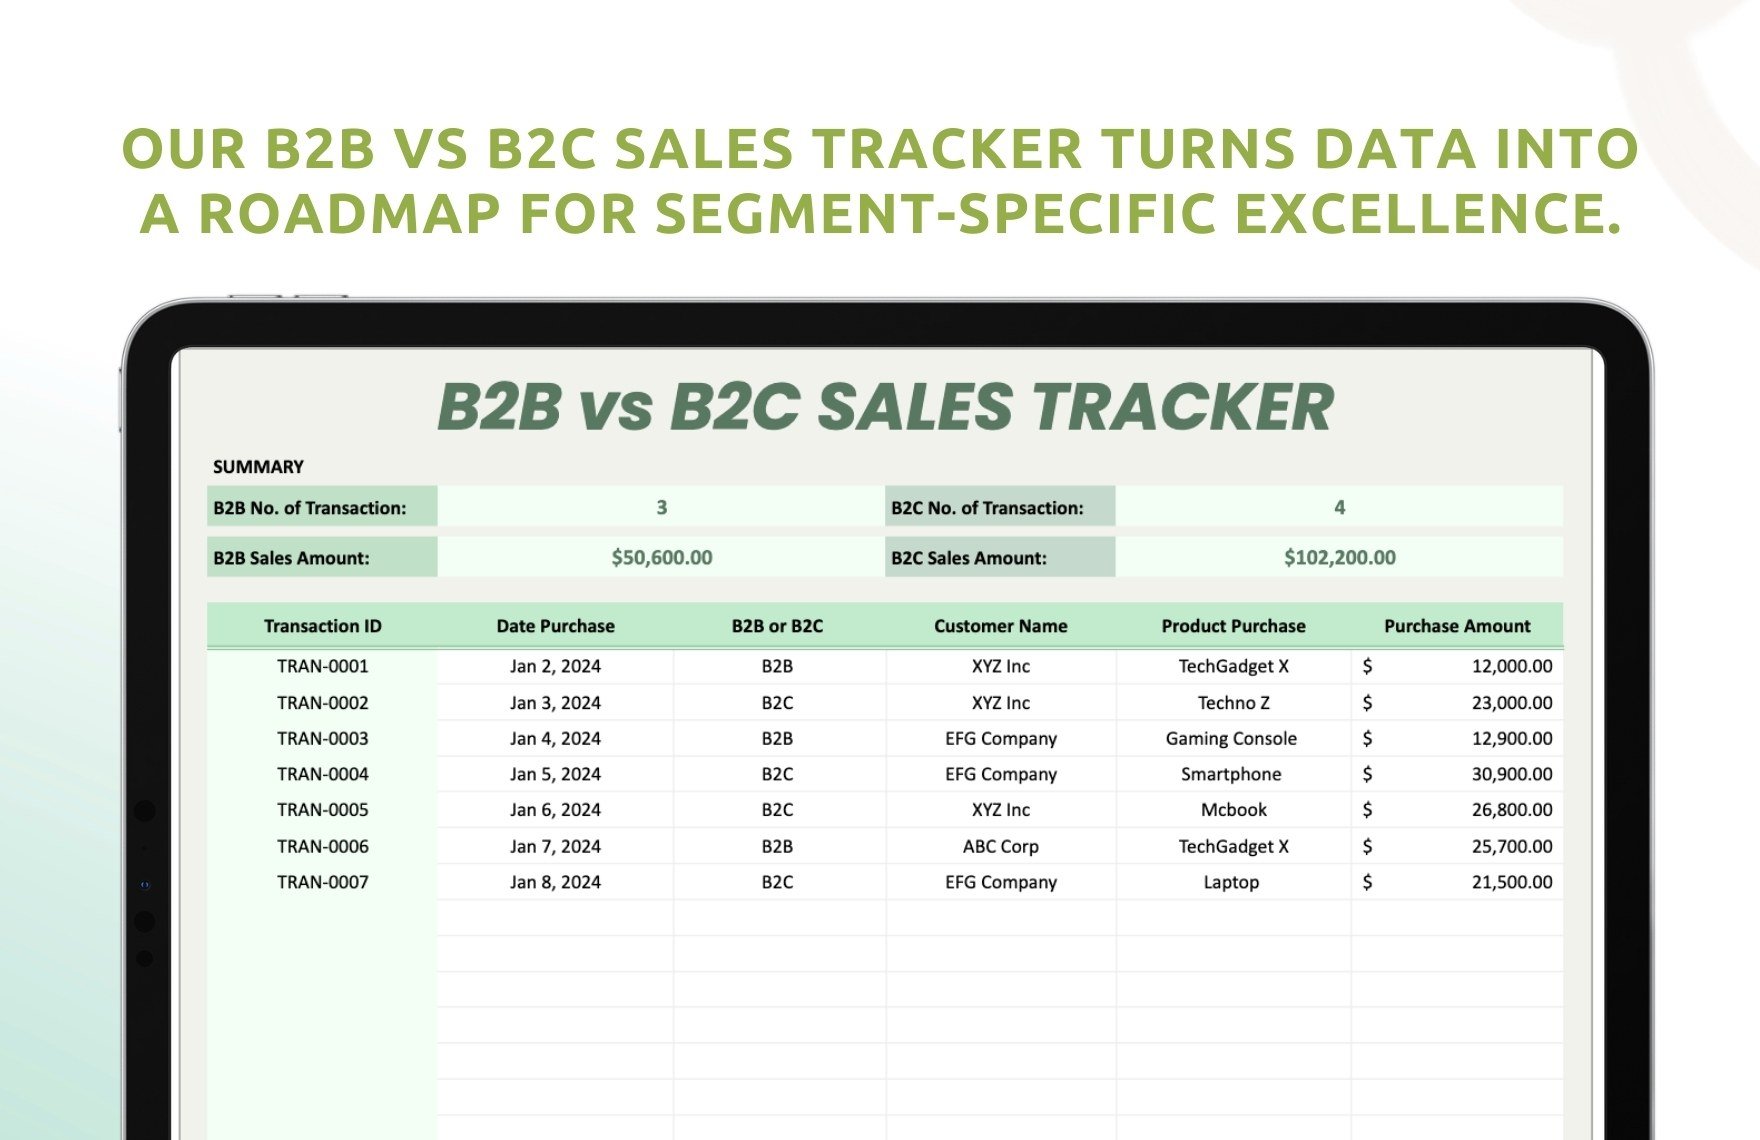 B2B vs B2C Sales Tracker Template